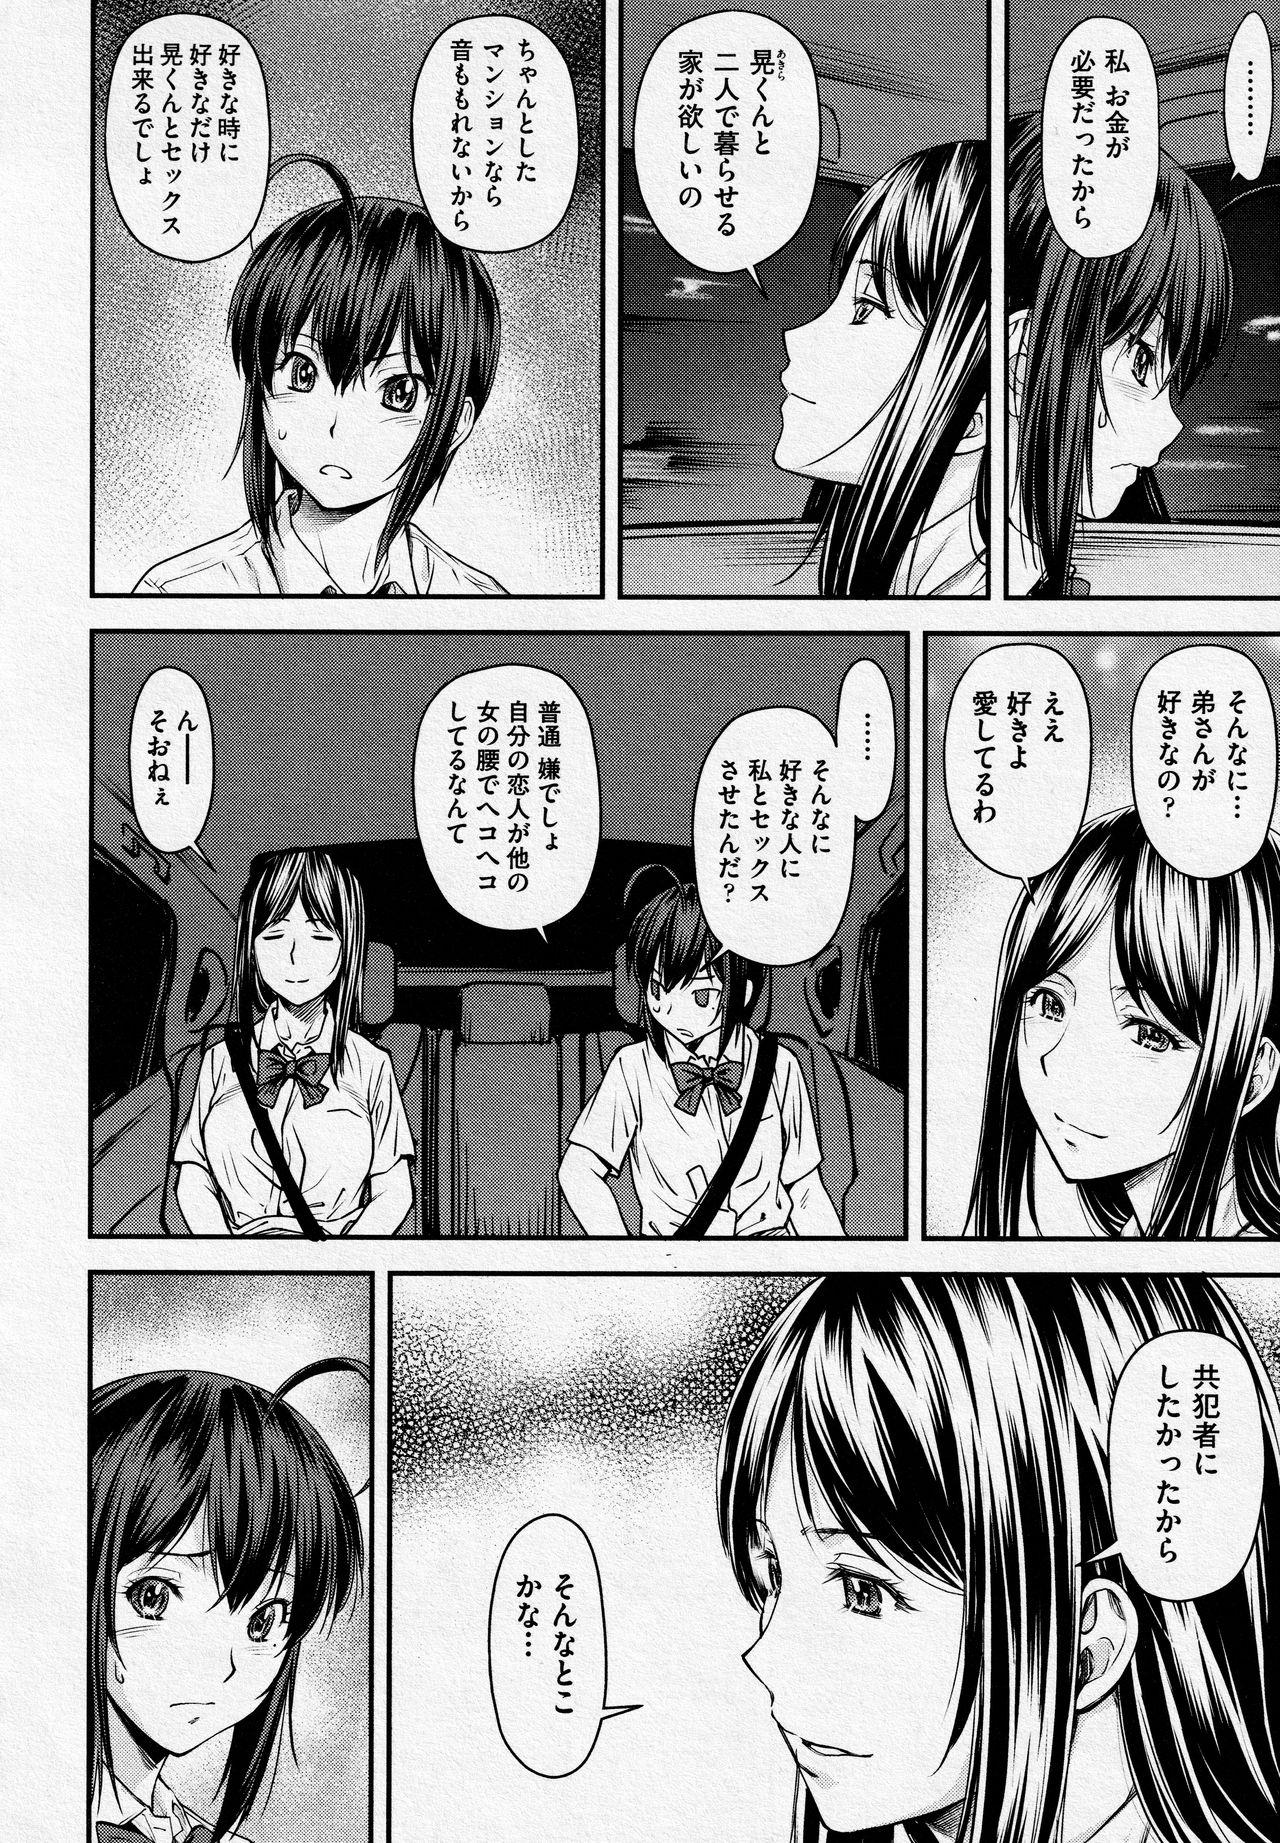 Analfucking Kaname Date #14 Strange - Page 2